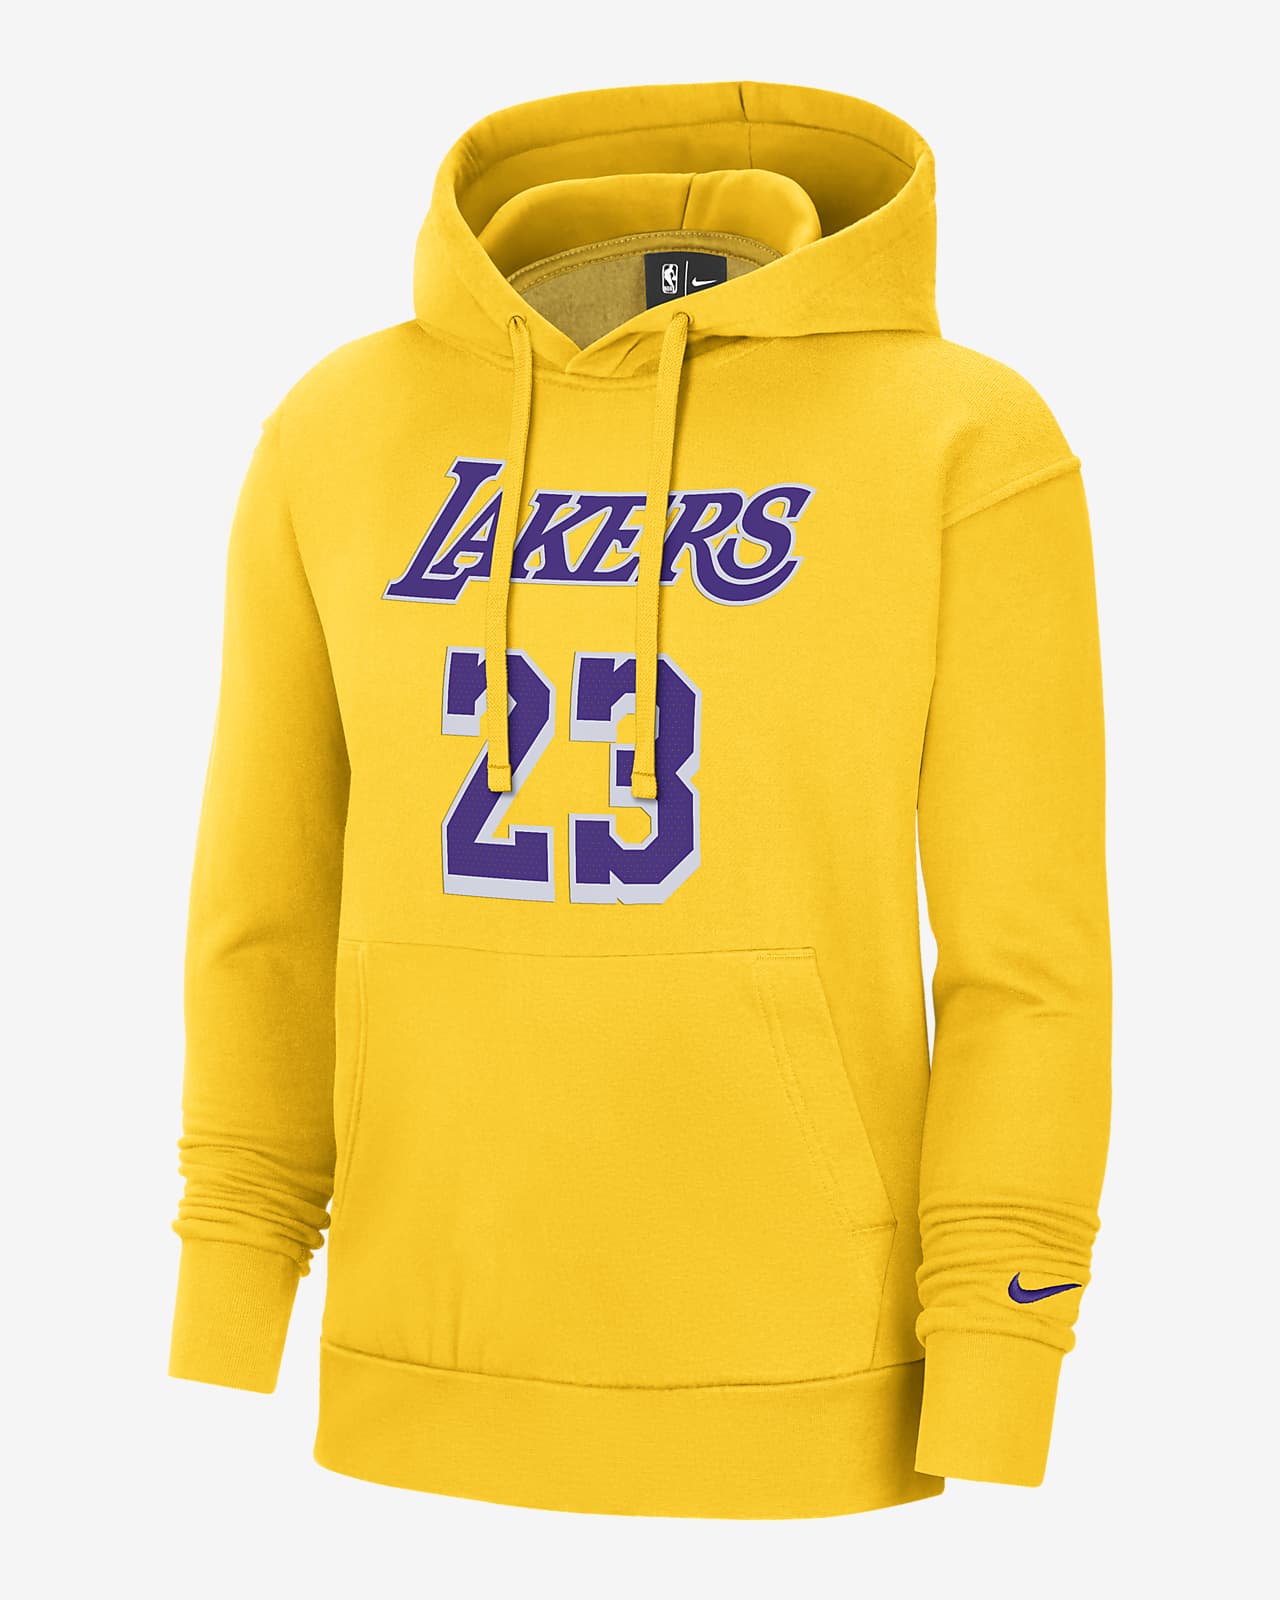 Lakers Essential Men's Nike NBA Hoodie